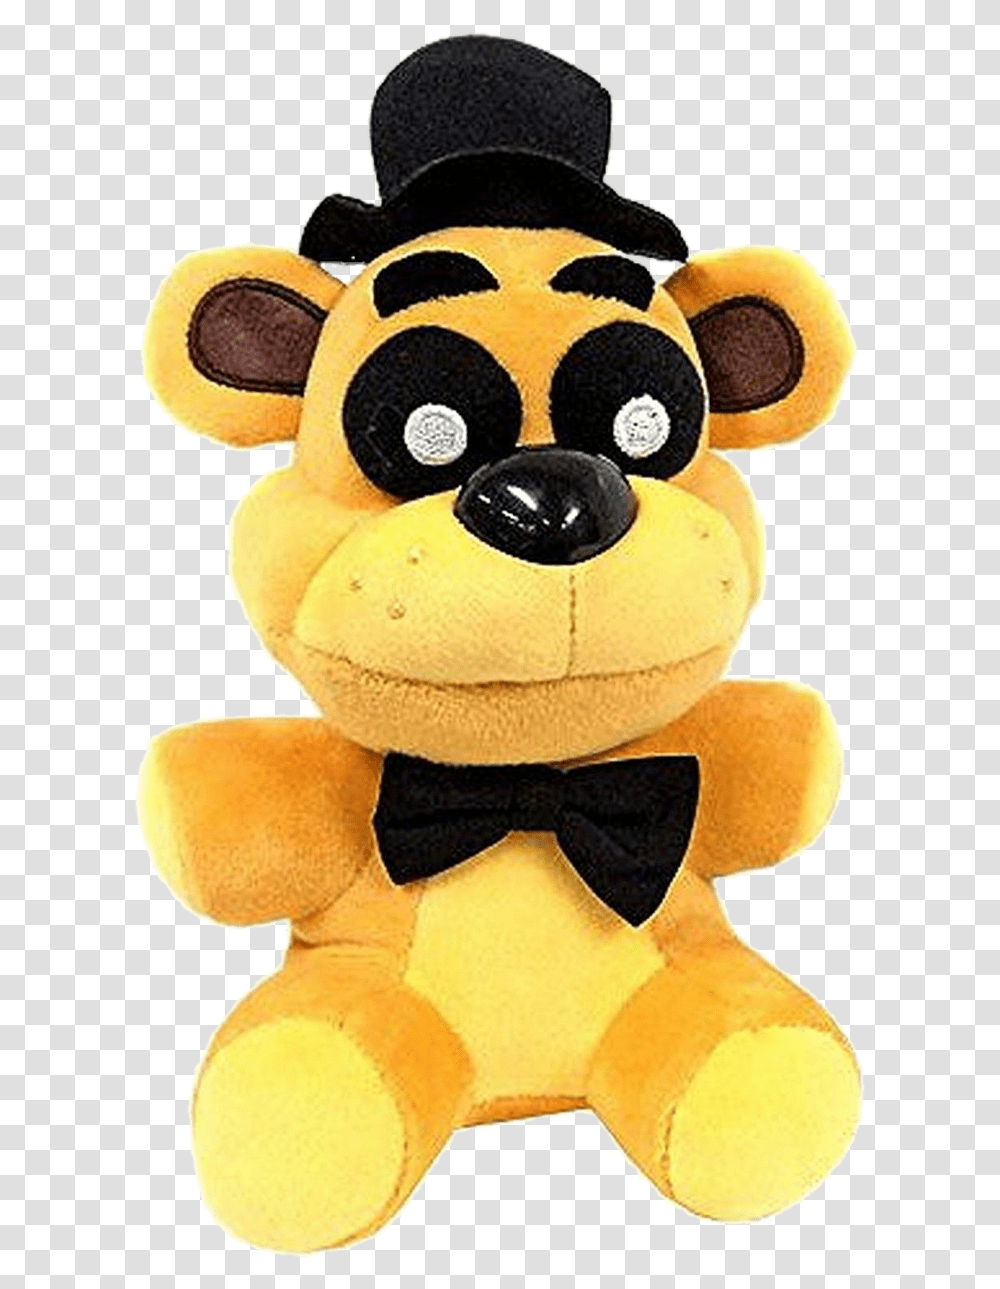 Freddy Bonnie Chica Foxy Plush Fnaf Golden Freddy Plush Funko, Toy, Pillow, Cushion, Teddy Bear Transparent Png